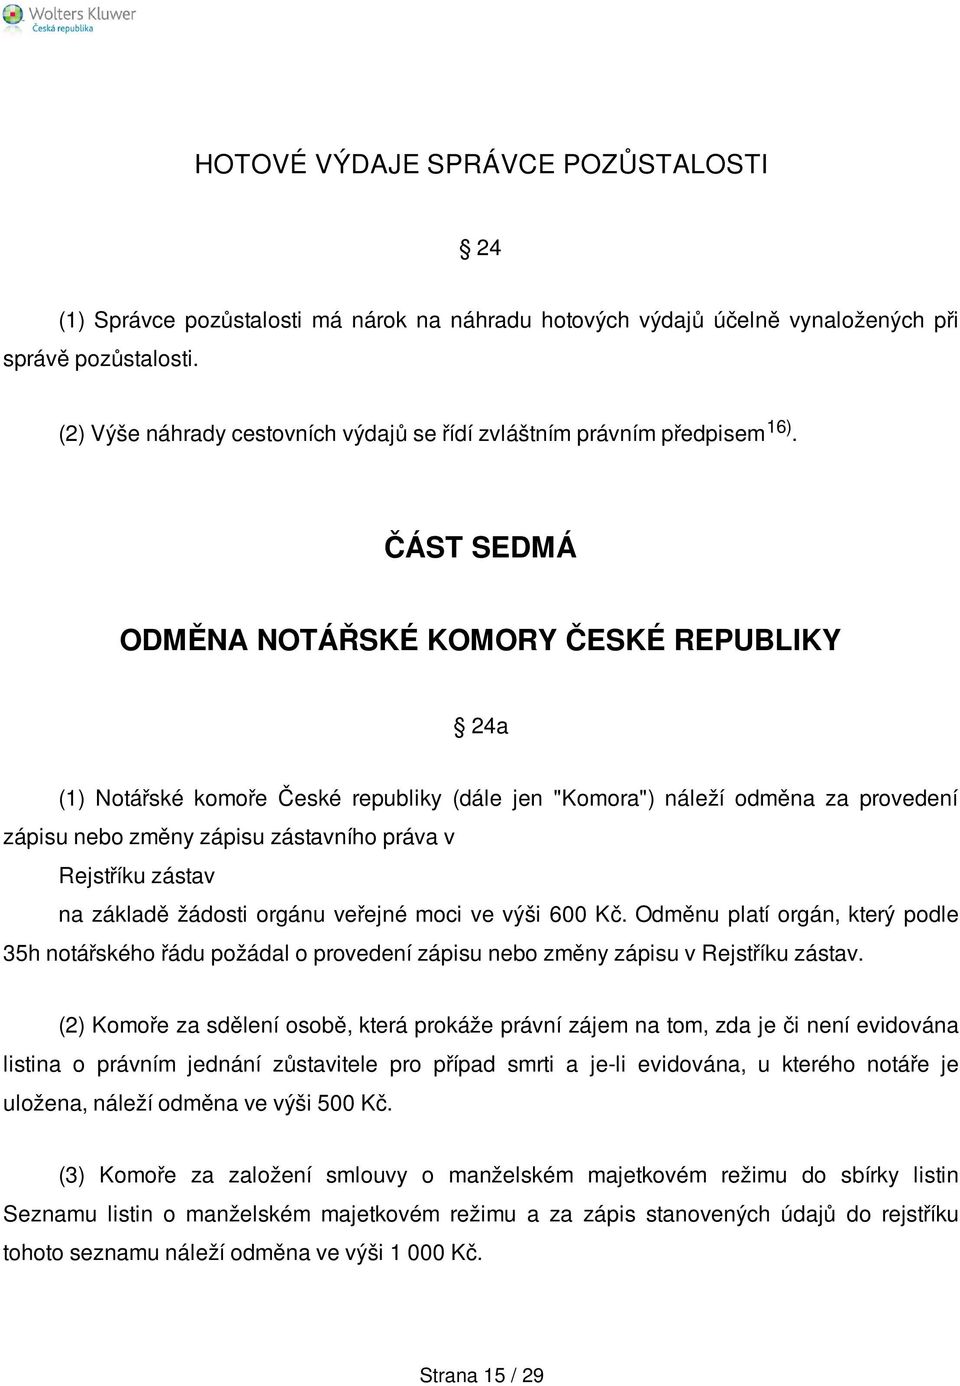 ČÁST SEDMÁ ODMĚNA NOTÁŘSKÉ KOMORY ČESKÉ REPUBLIKY 24a (1) Notářské komoře České republiky (dále jen "Komora") náleží odměna za provedení zápisu nebo změny zápisu zástavního práva v Rejstříku zástav